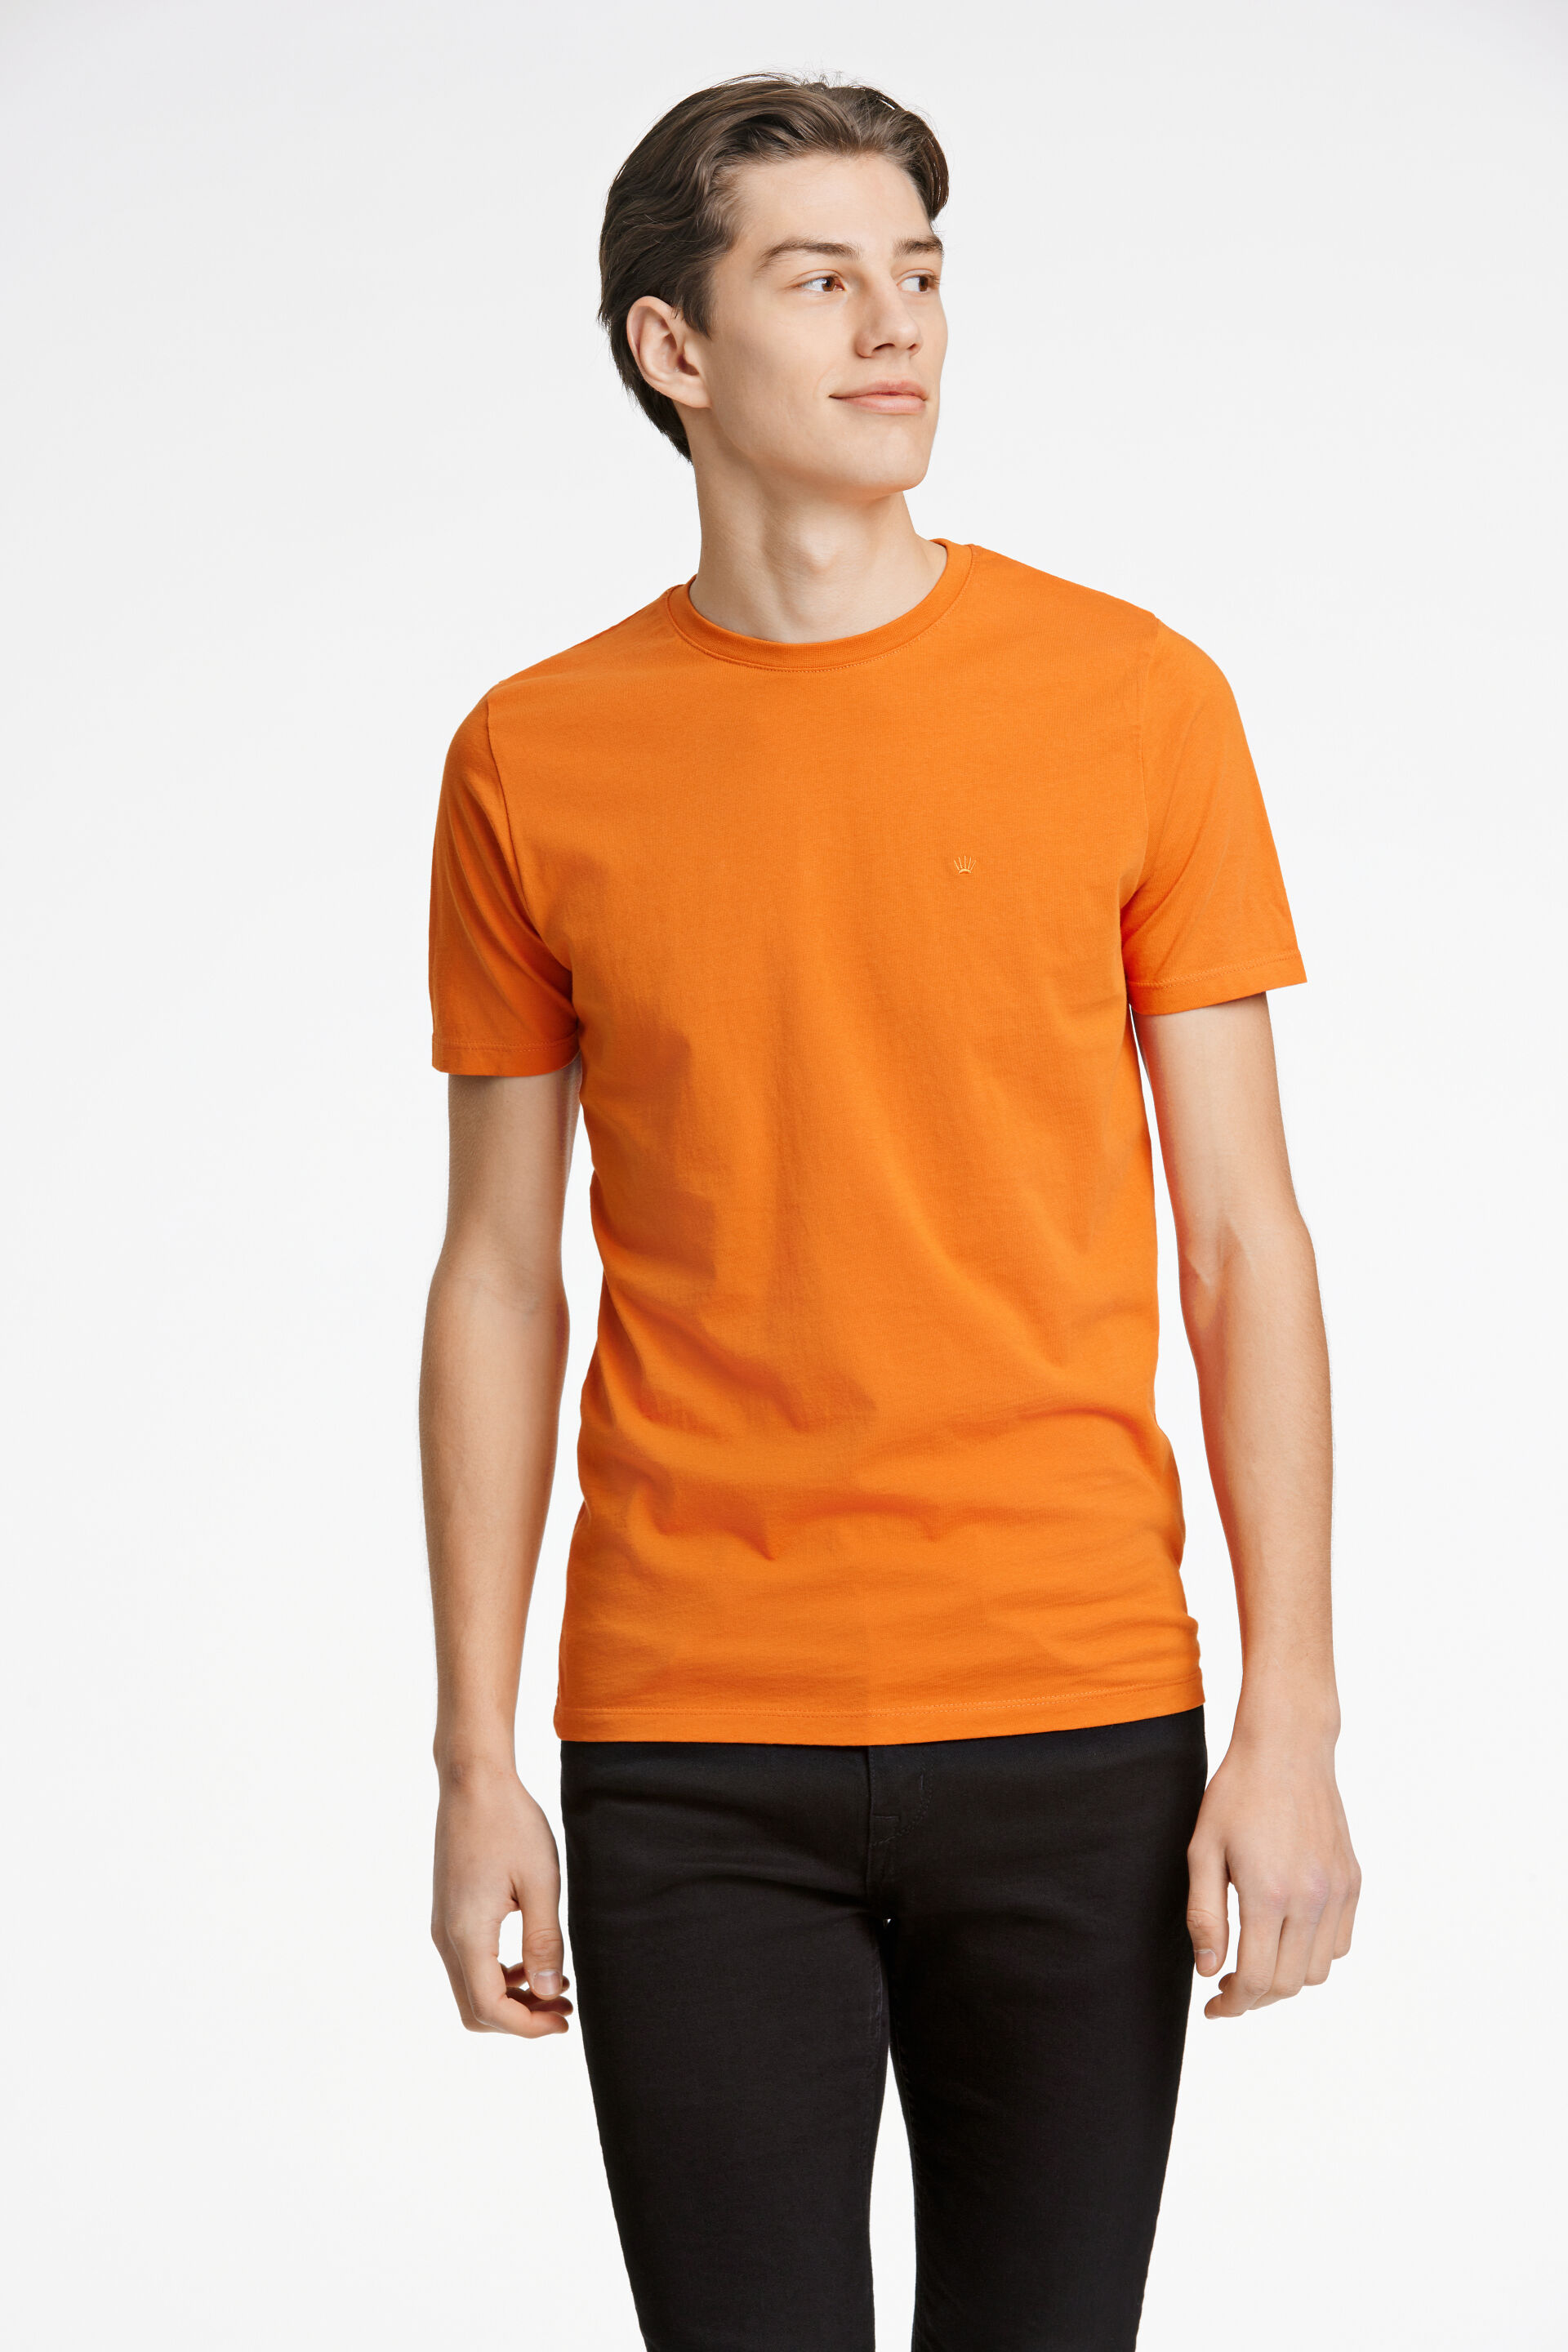 T-shirt T-shirt Orange 60-40005